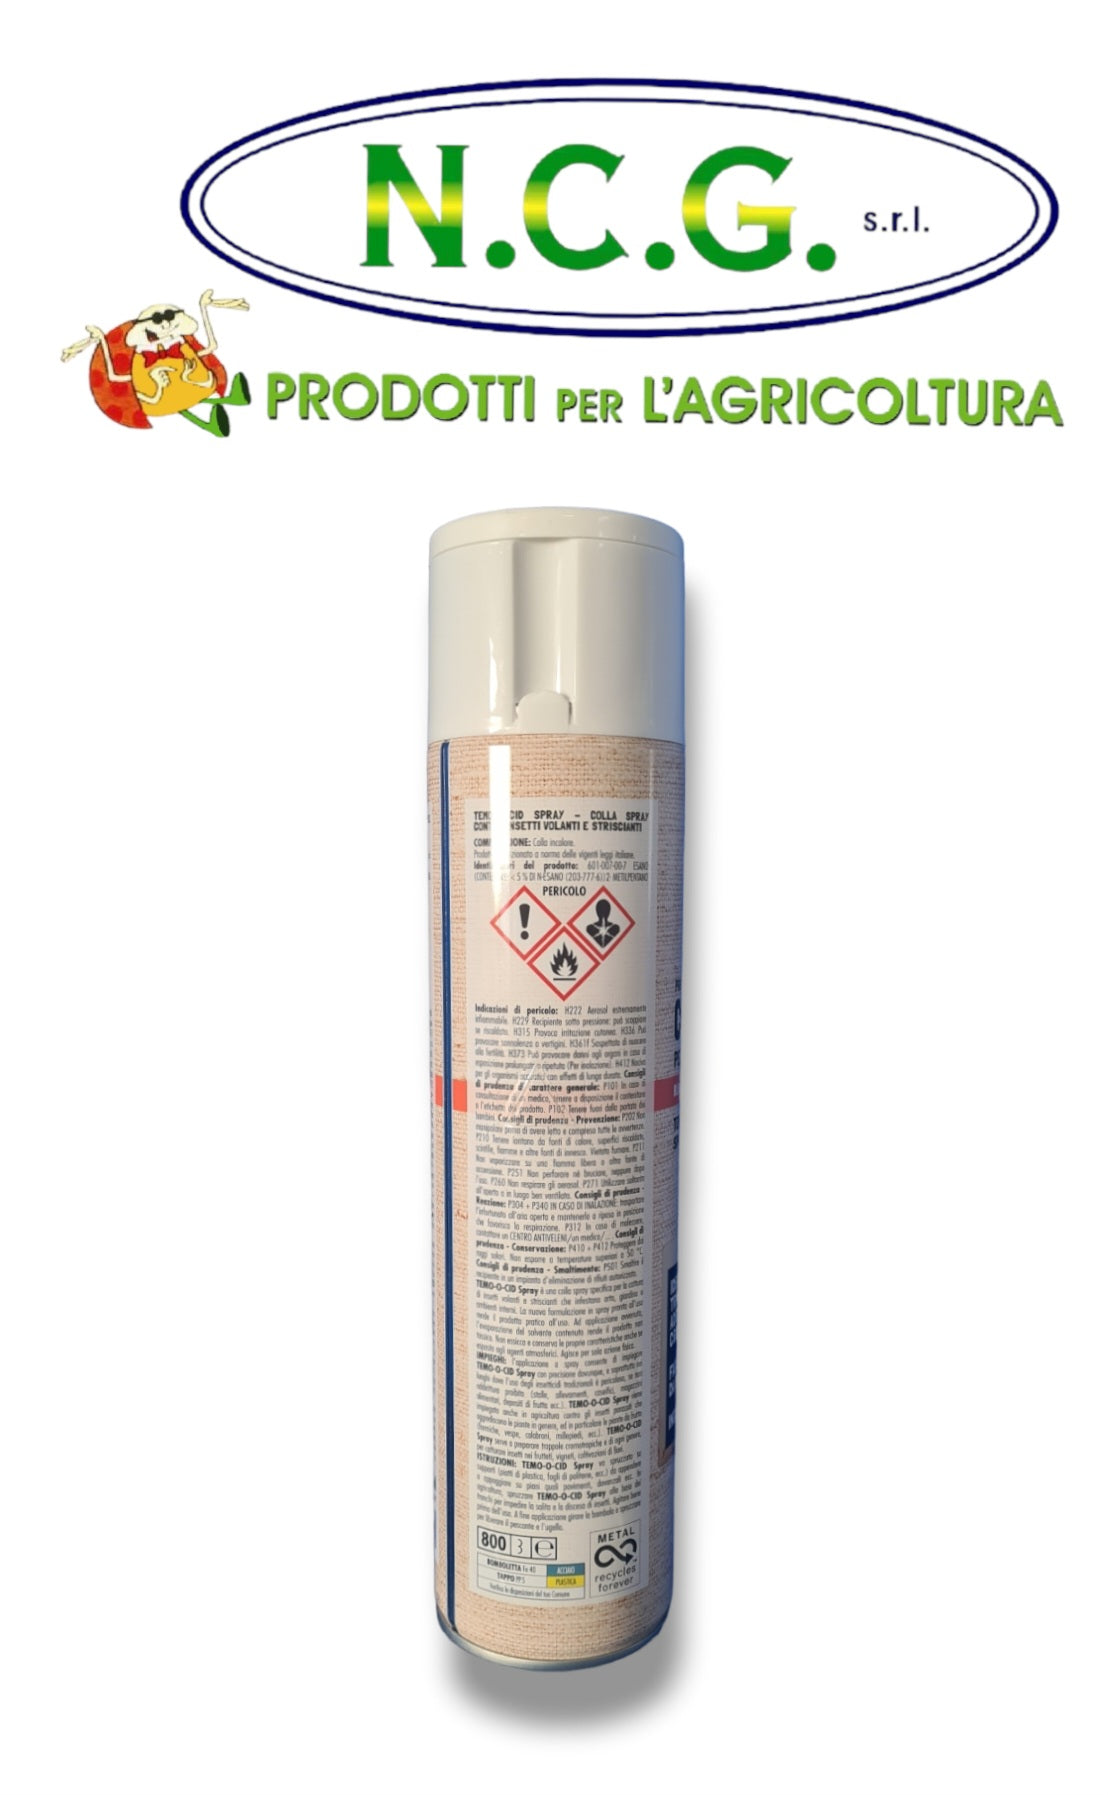 Colla spray Temo-cid Adama contro insetti – NCGsrl